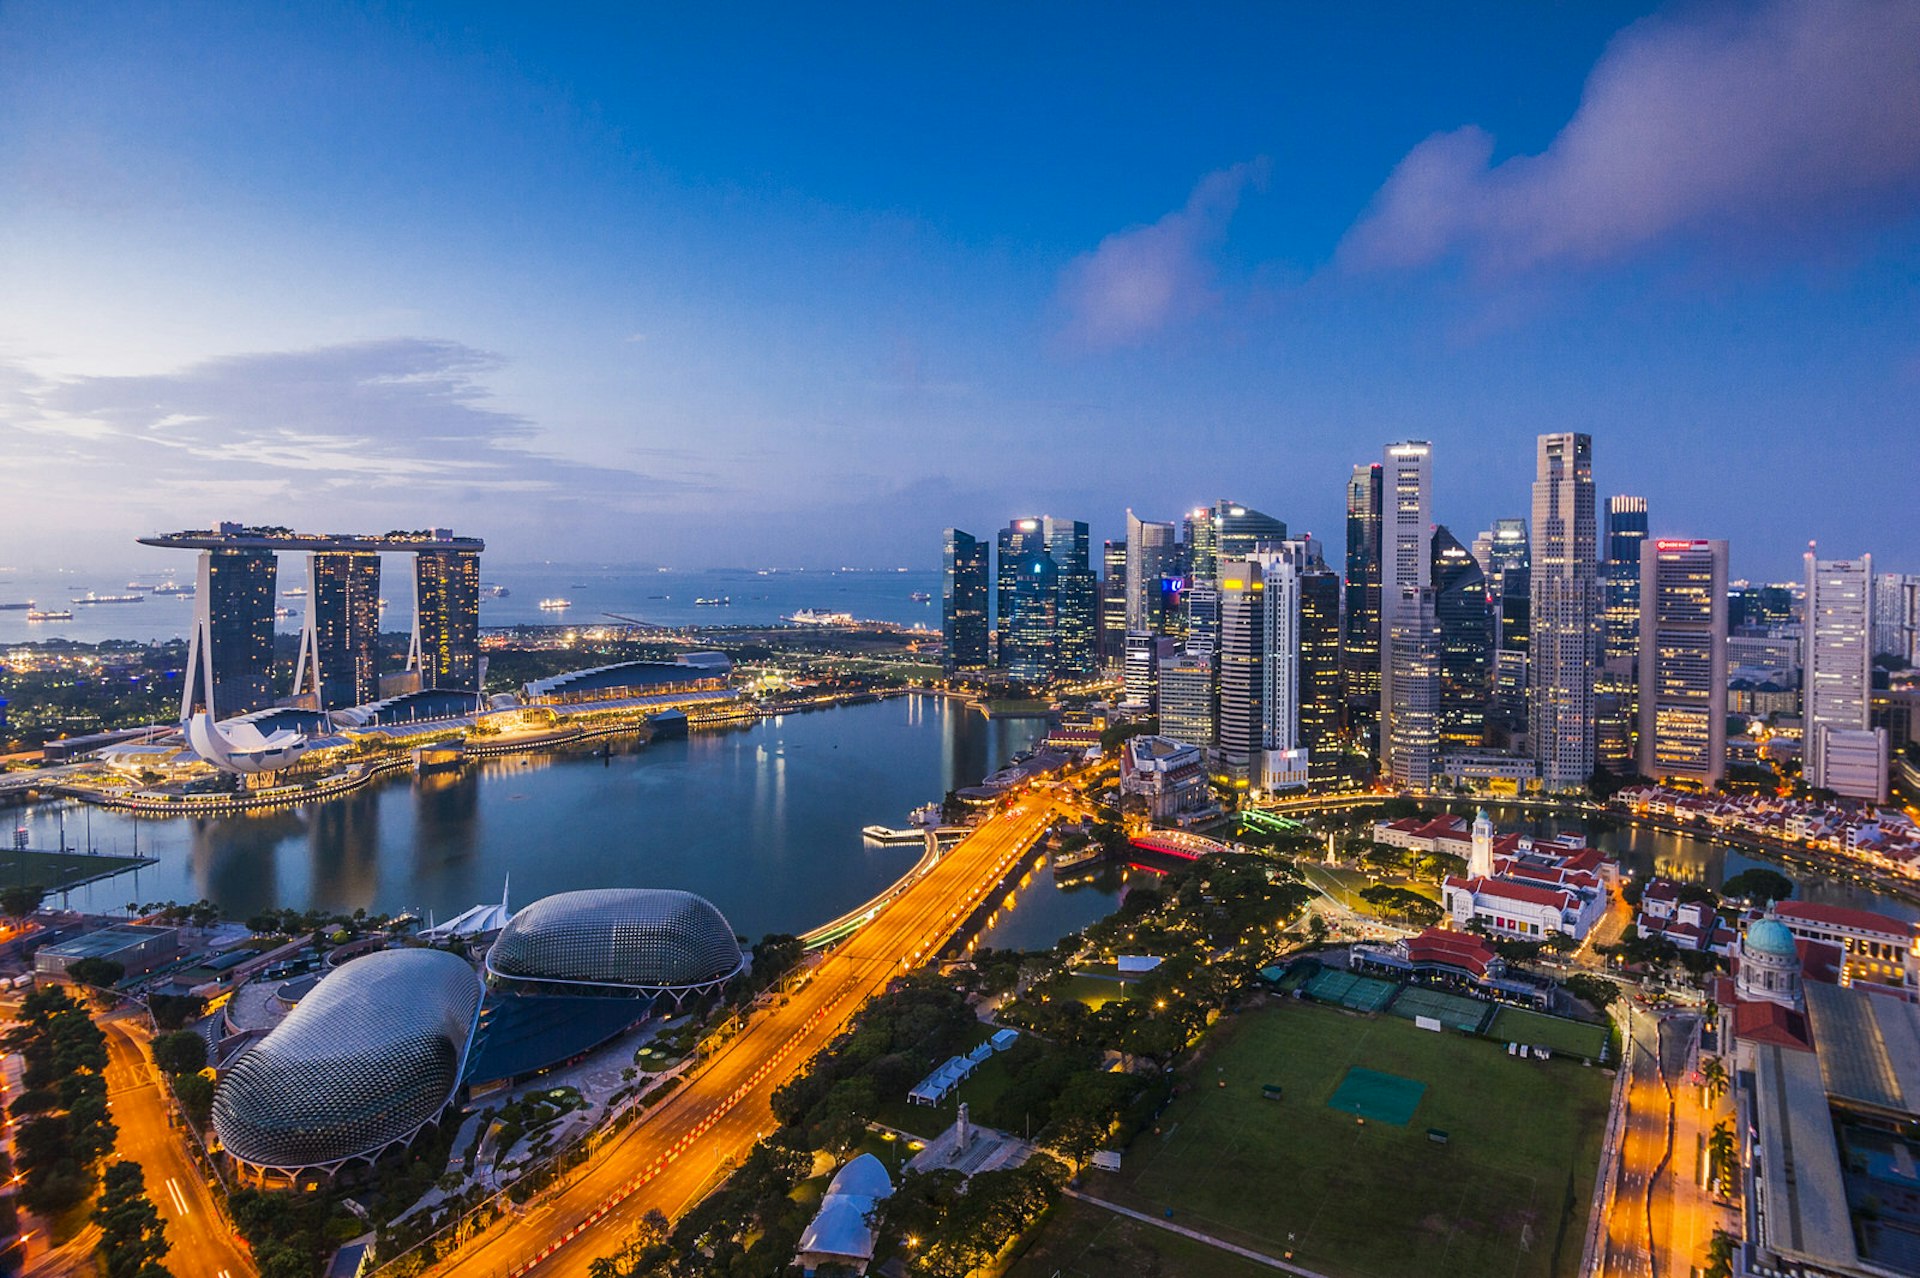 Singapore's skyline at night